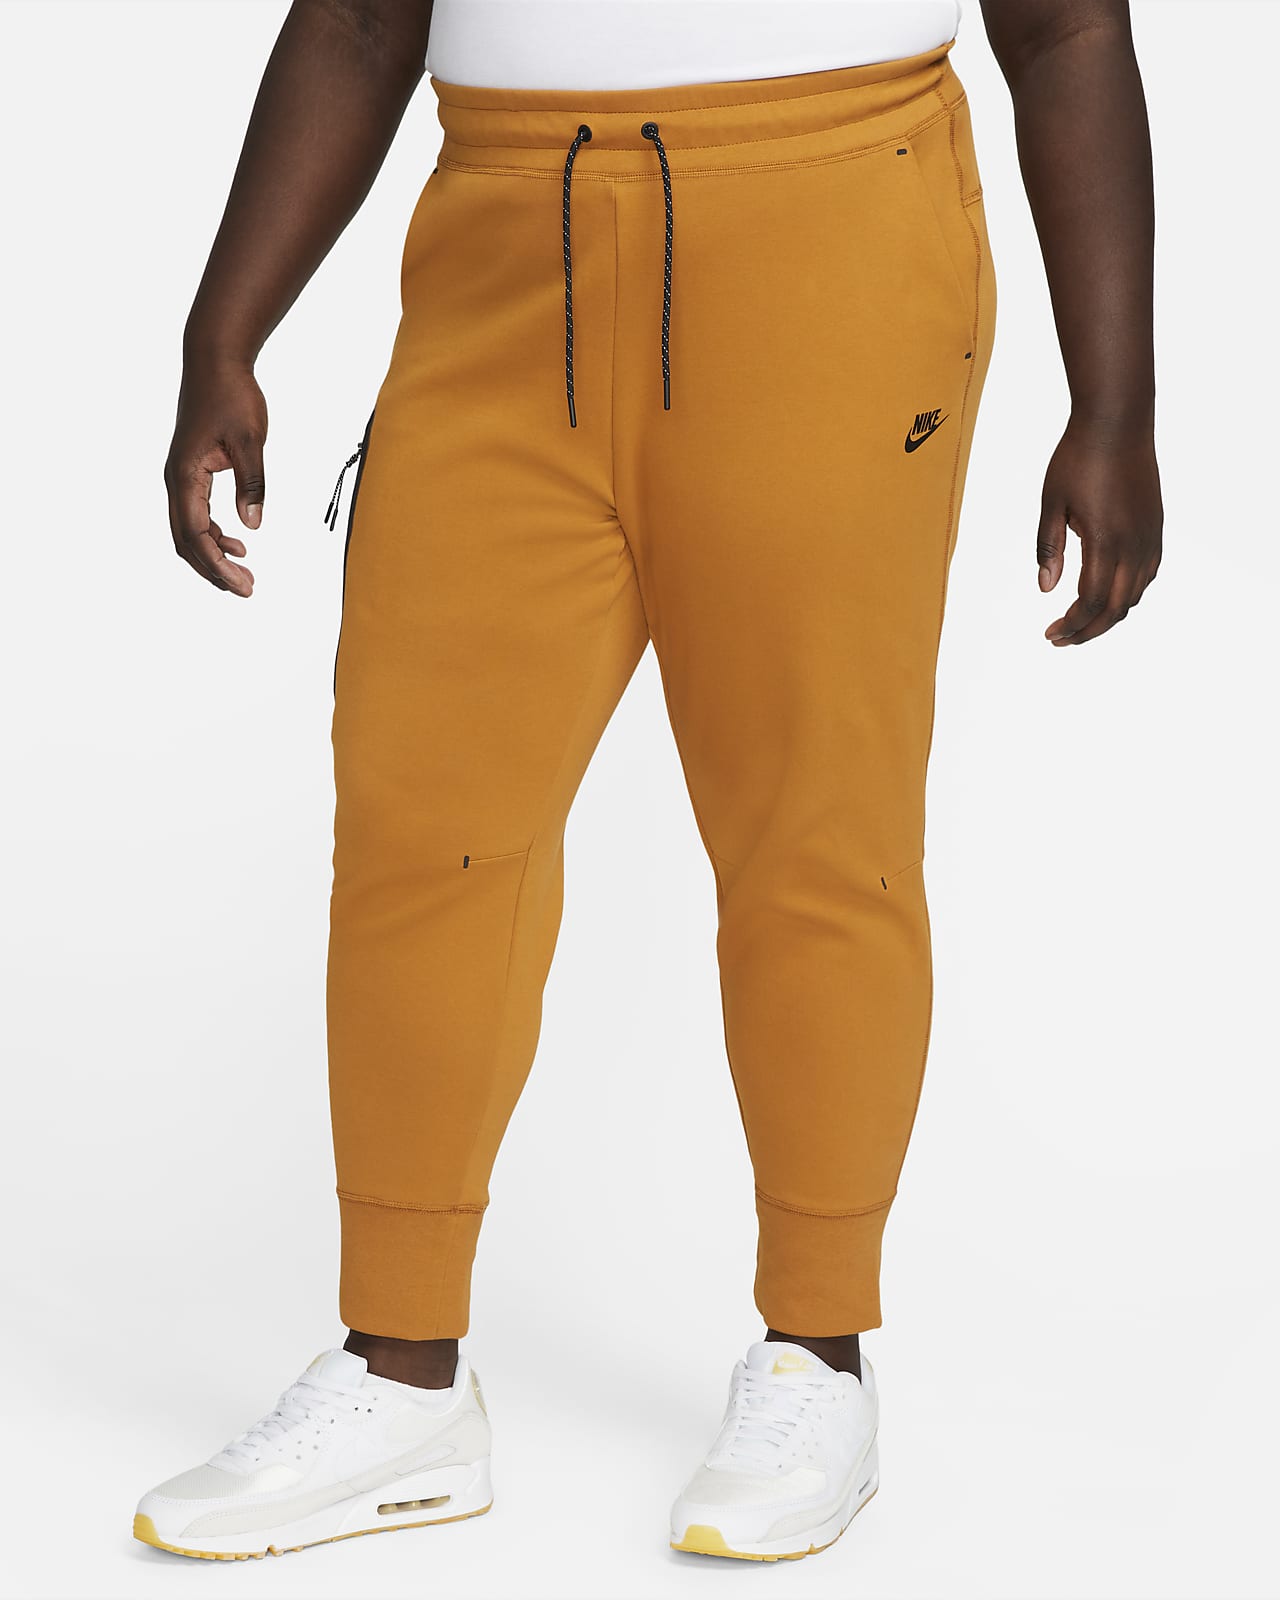 Ondergedompeld Startpunt heel veel Nike Sportswear Tech Fleece Women's Pants (Plus Size). Nike.com